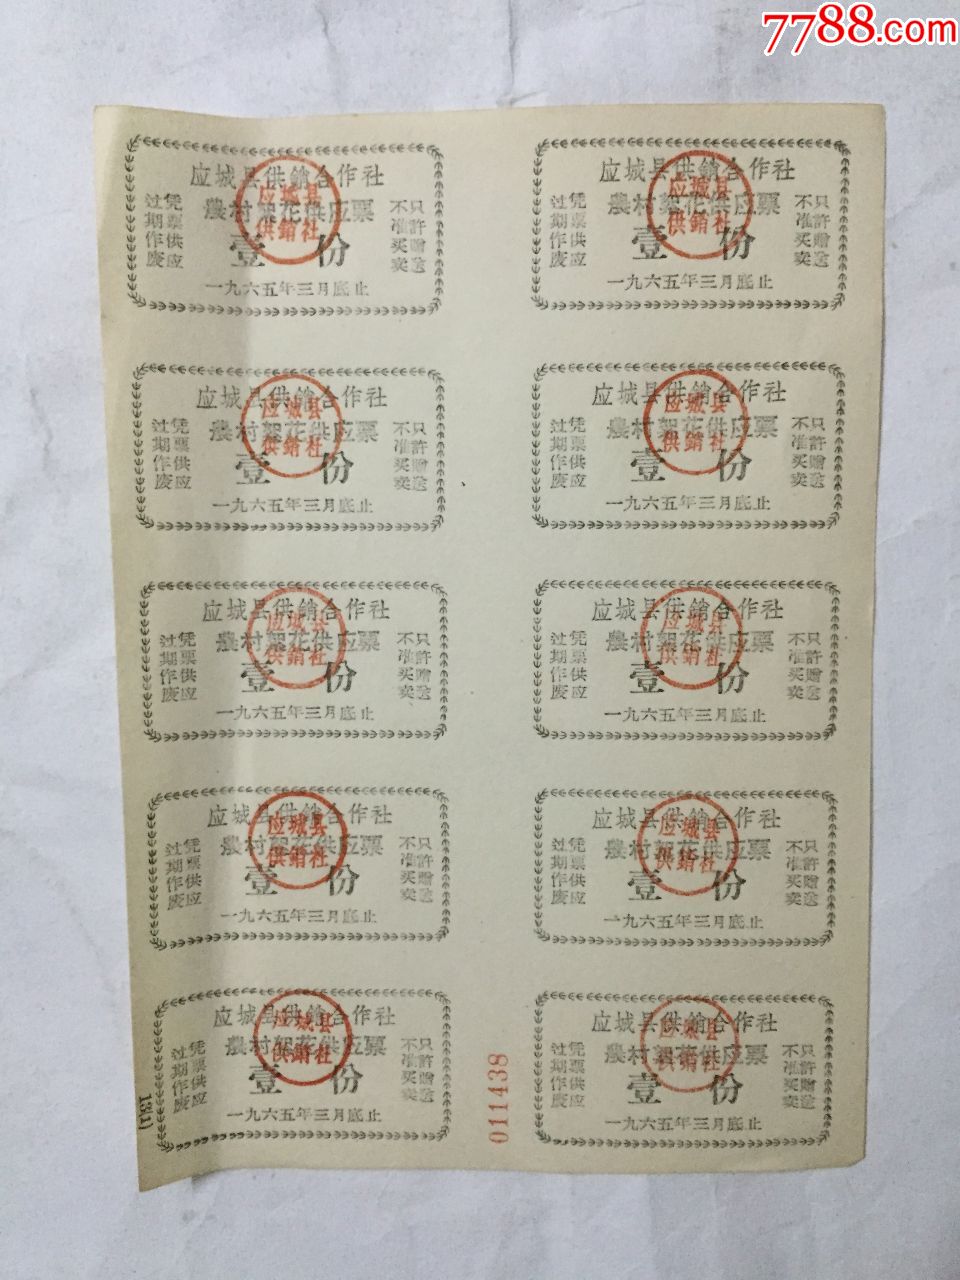 应城县供销合作社农村絮花供应票一份1965年